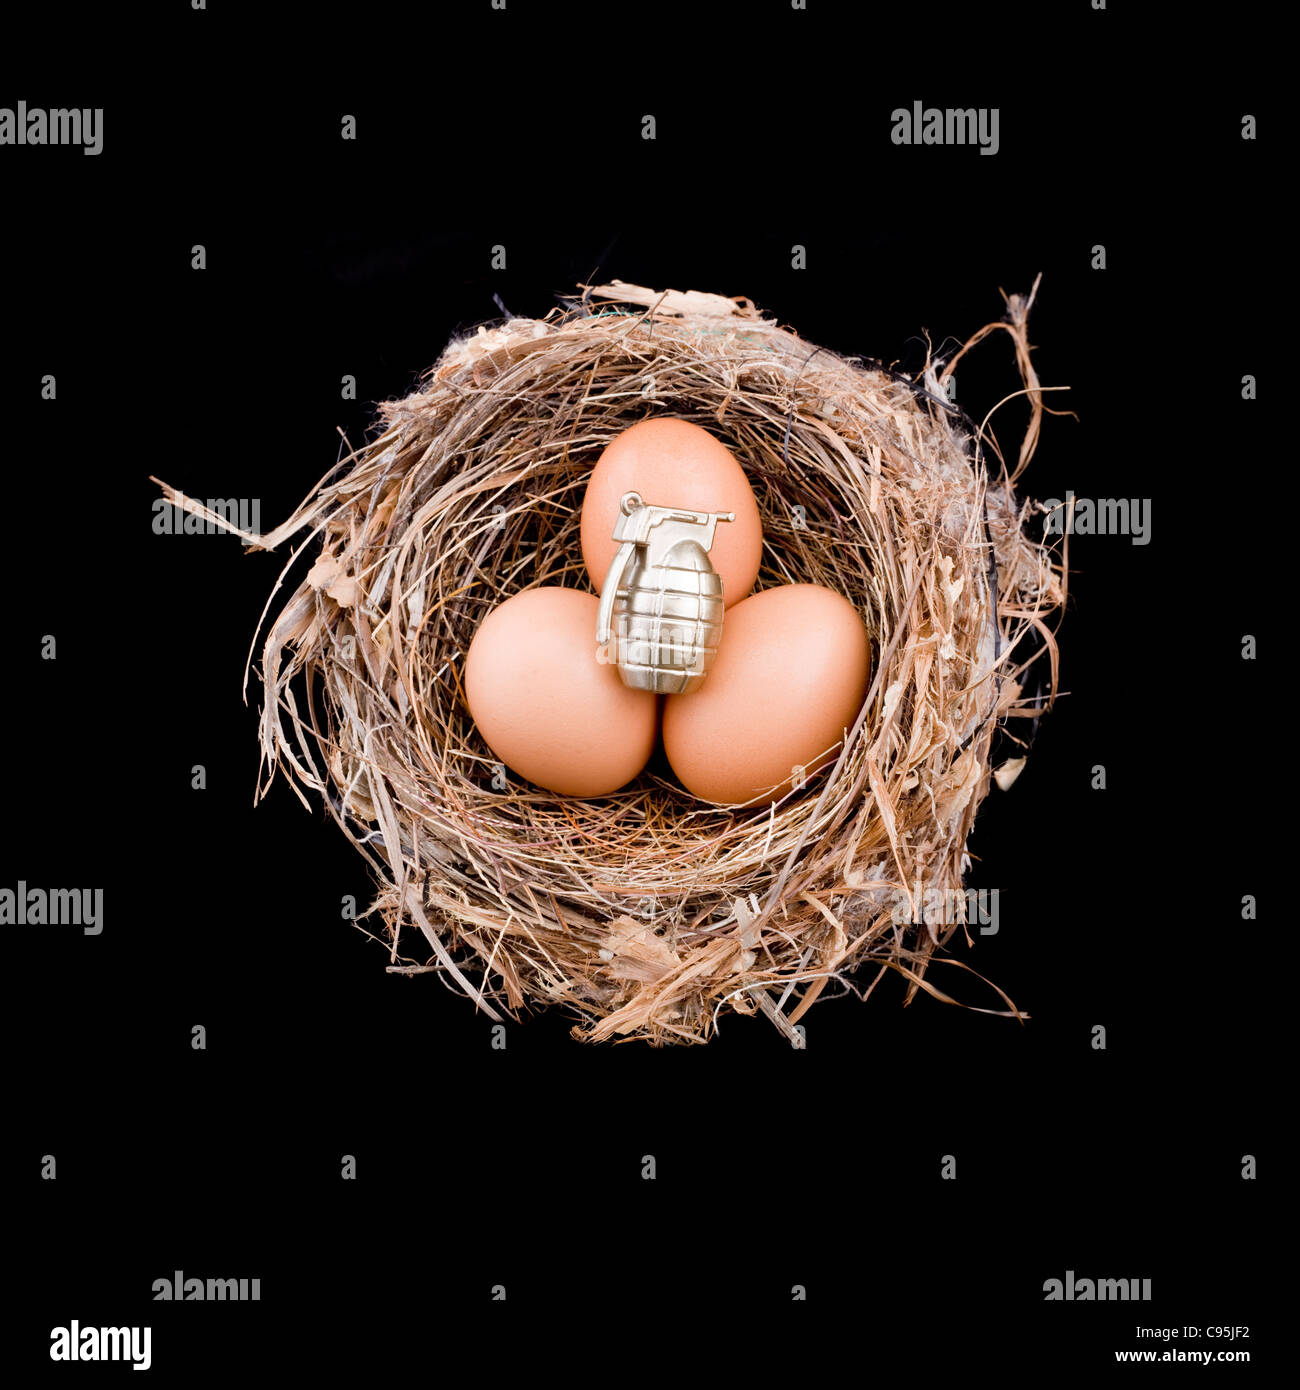 3 X Eiern mit 1 Granate sitzt in einem Vogelnest Stockfoto